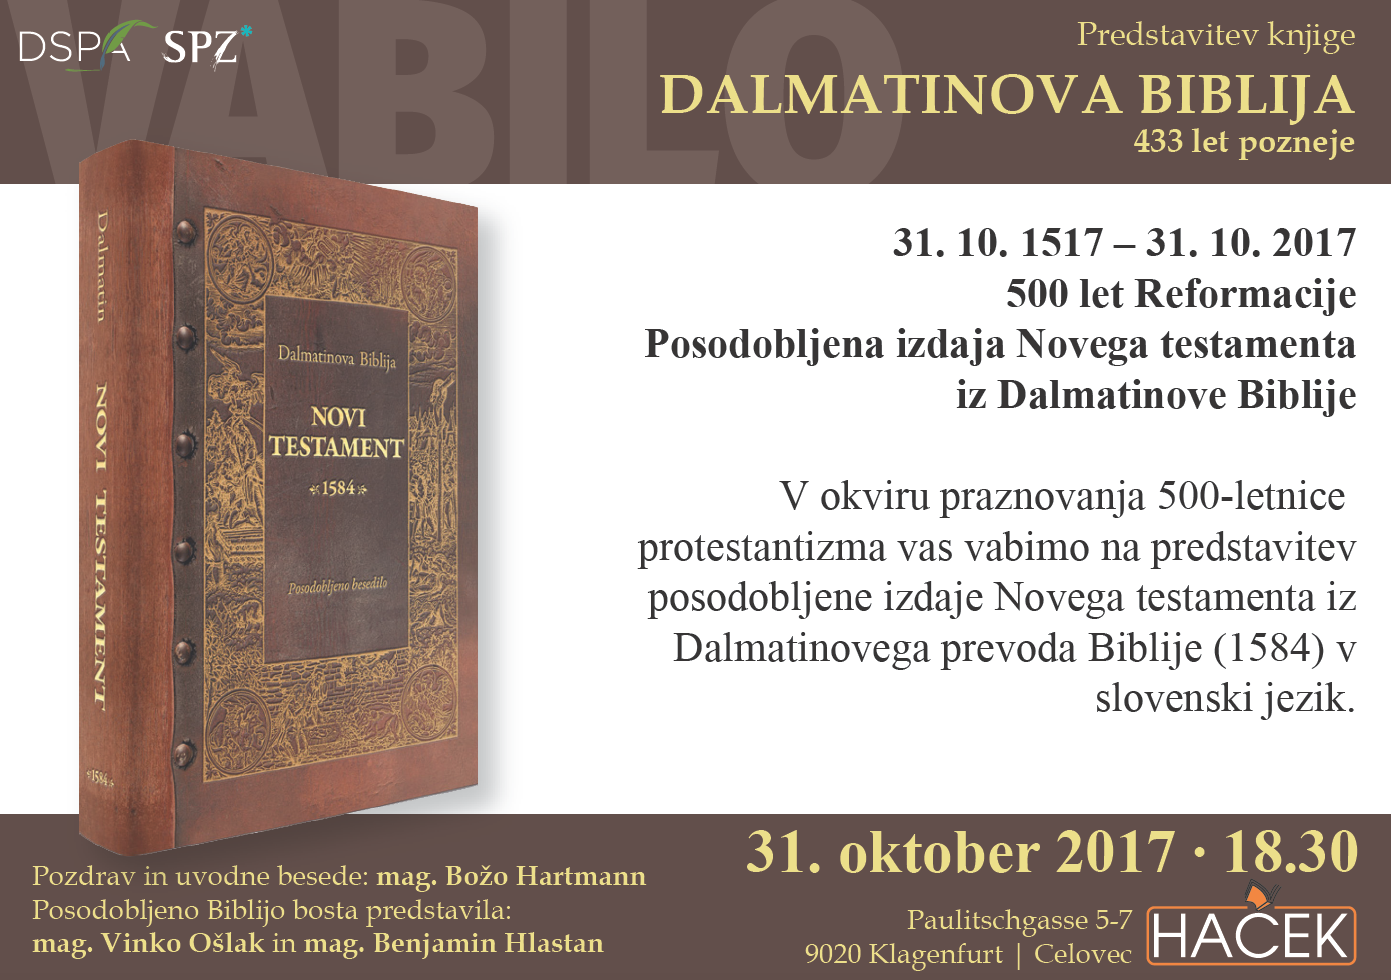 Dalmatinova Biblija 433 let pozneje